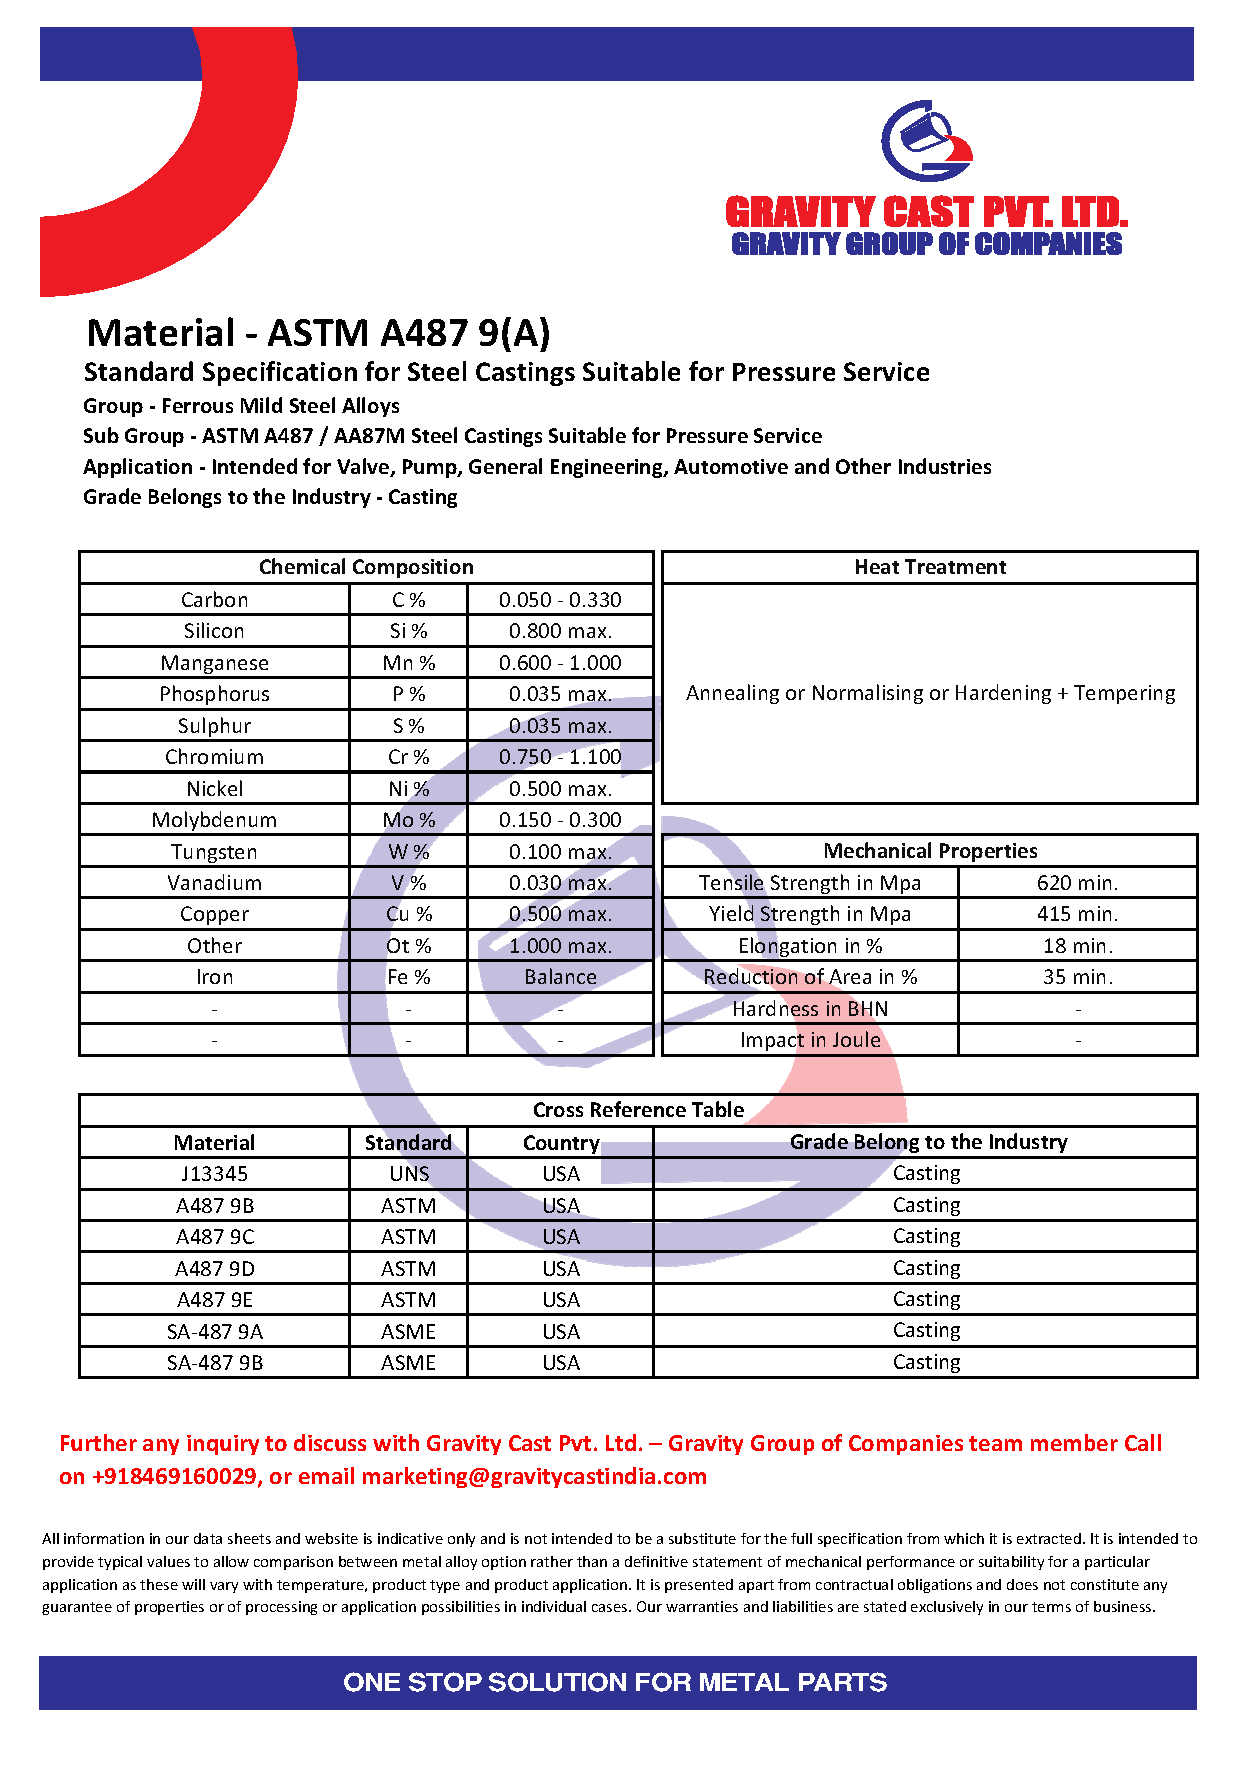 ASTM A487 9(A).pdf